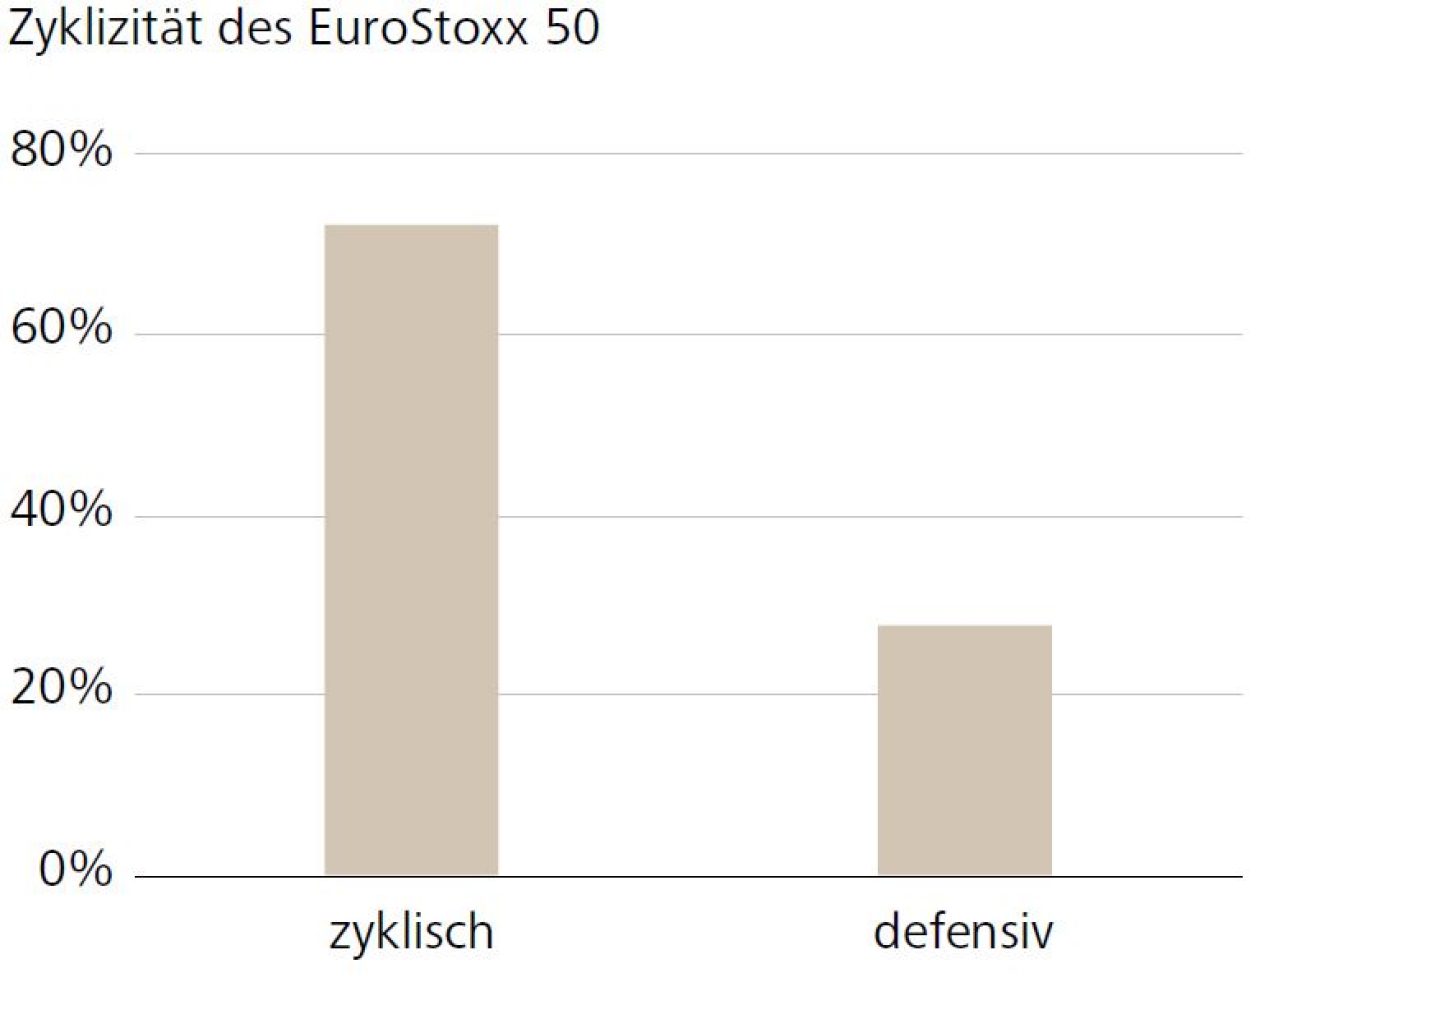 Zyklizität des EuroStoxx 50